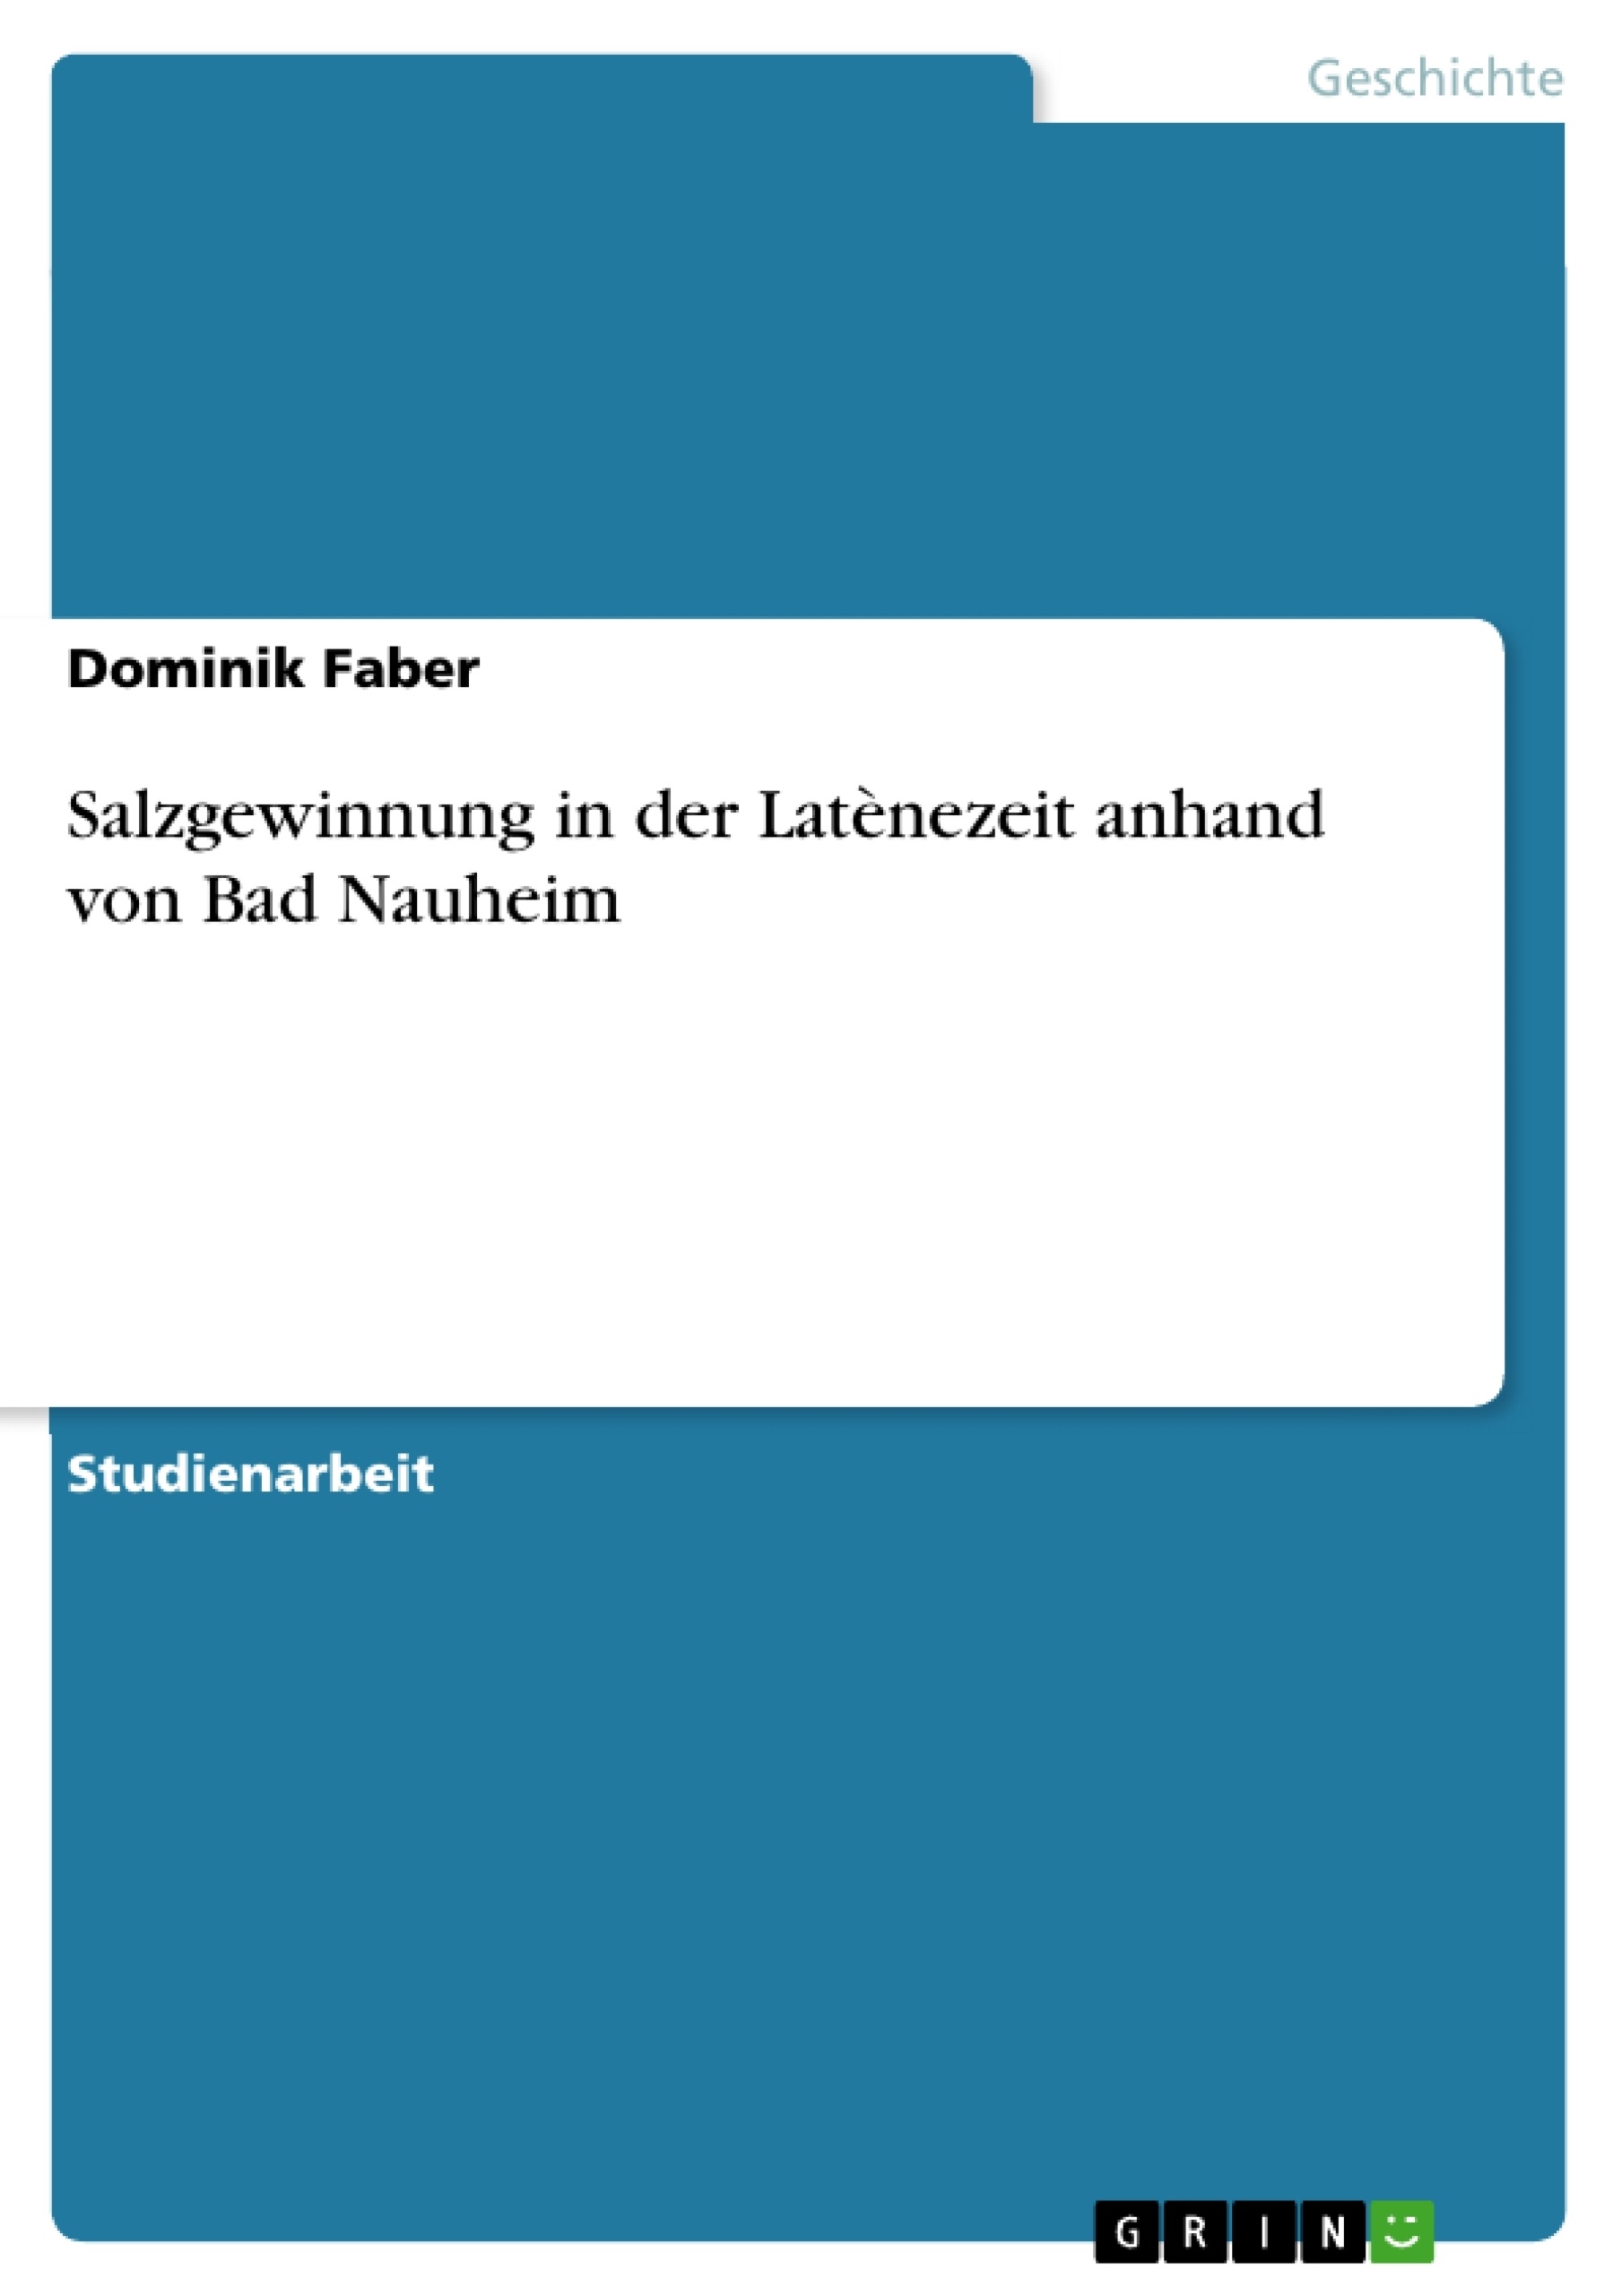 Título: Salzgewinnung in der Latènezeit anhand von Bad Nauheim